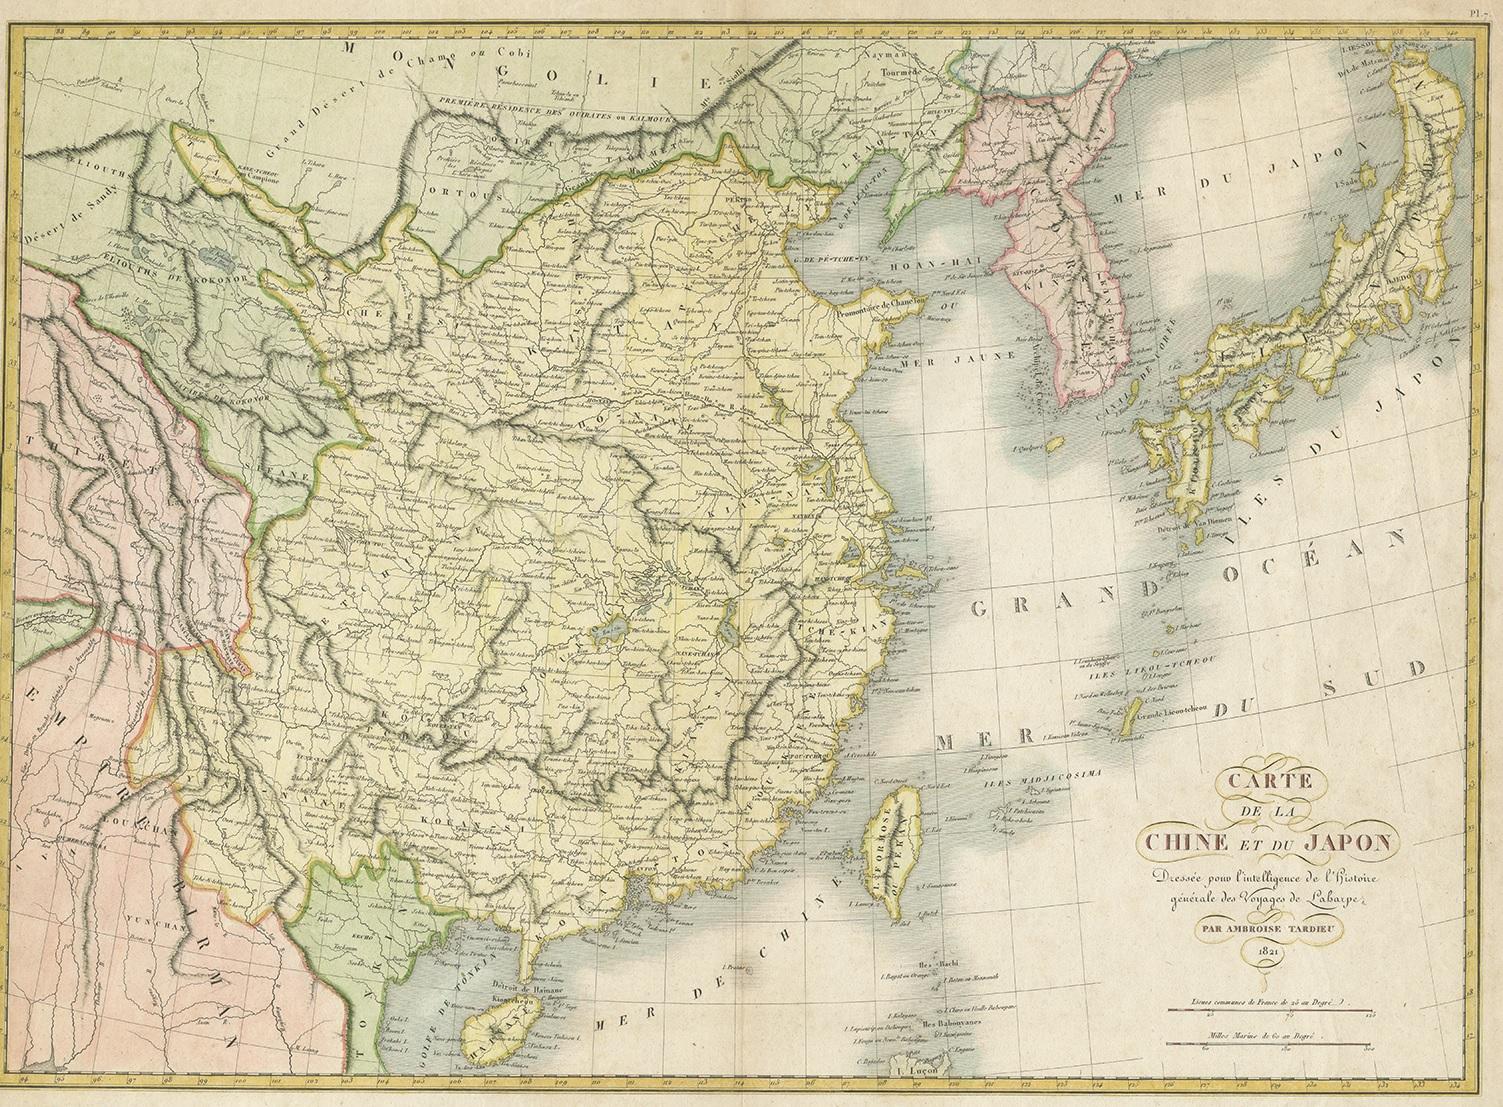 Antique map titled 'Carte de la Chine et du Japon'. Detailed map of China, showing Korea, Japan and Taiwan. This map originates from 'L'histoire général des voyages' by J.F. de la Harpe.